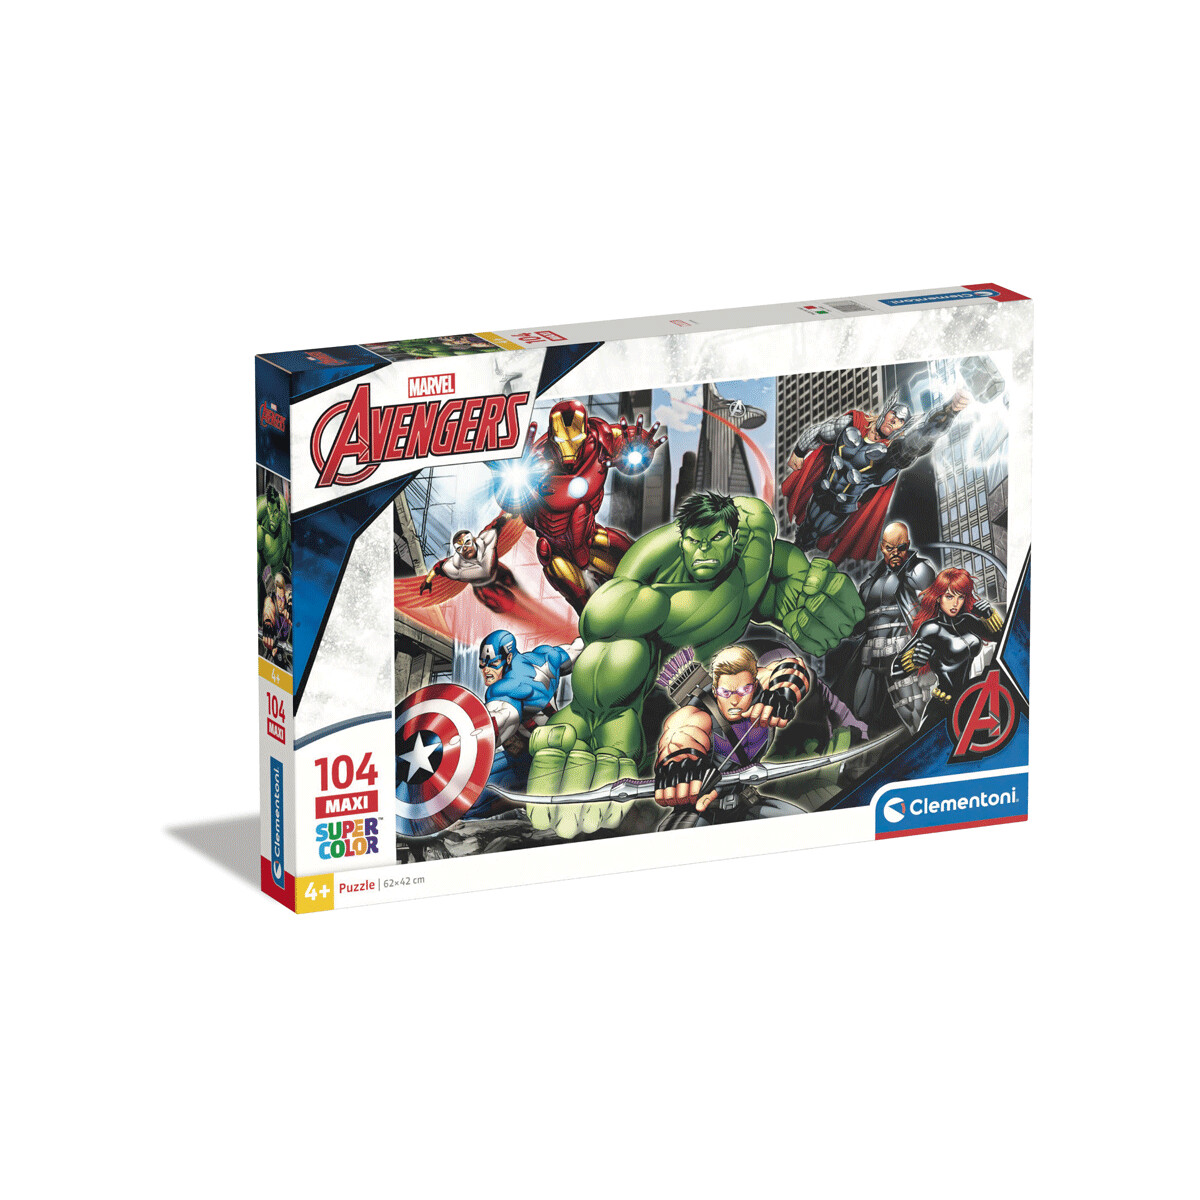 Clementoni - 23688 - puzzle 104 maxi the avengers 62x42 cm - 